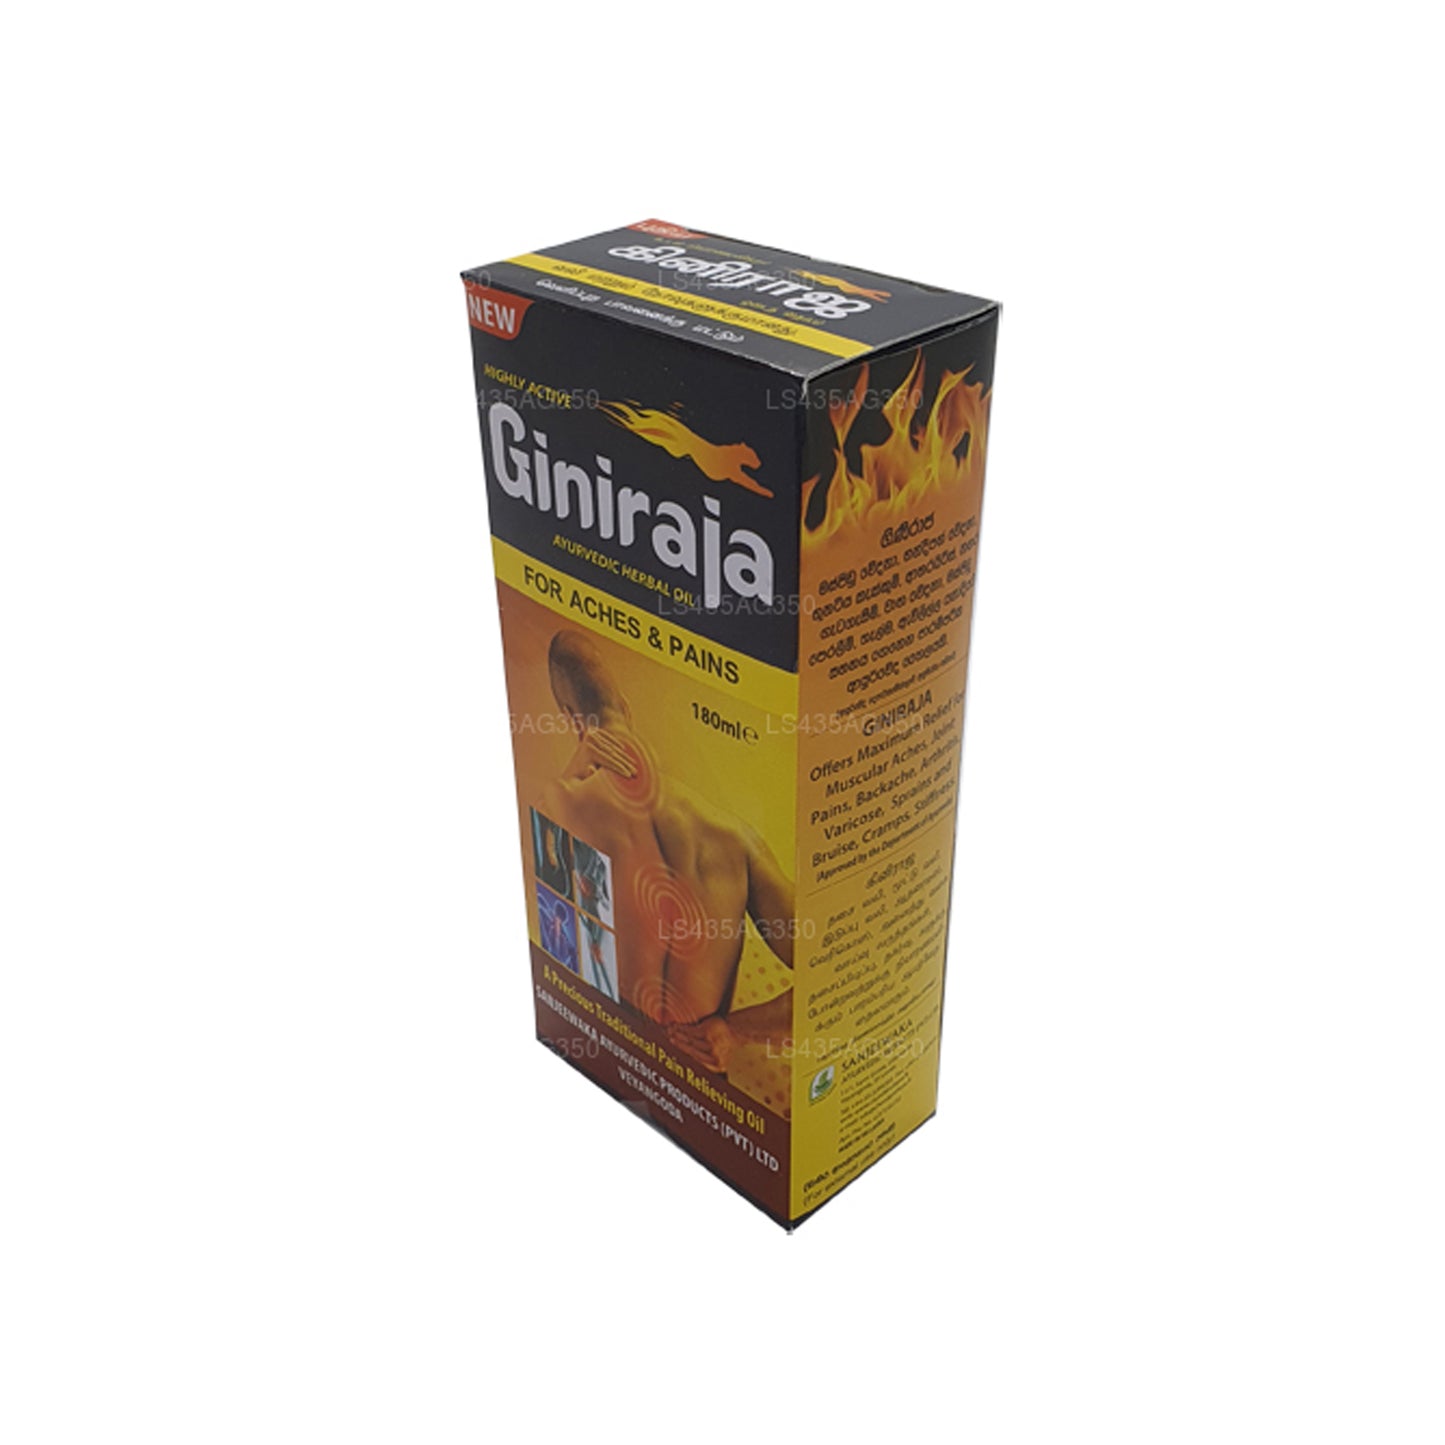 Chandanalepa Giniraja Pain Relieving Herbal Oil